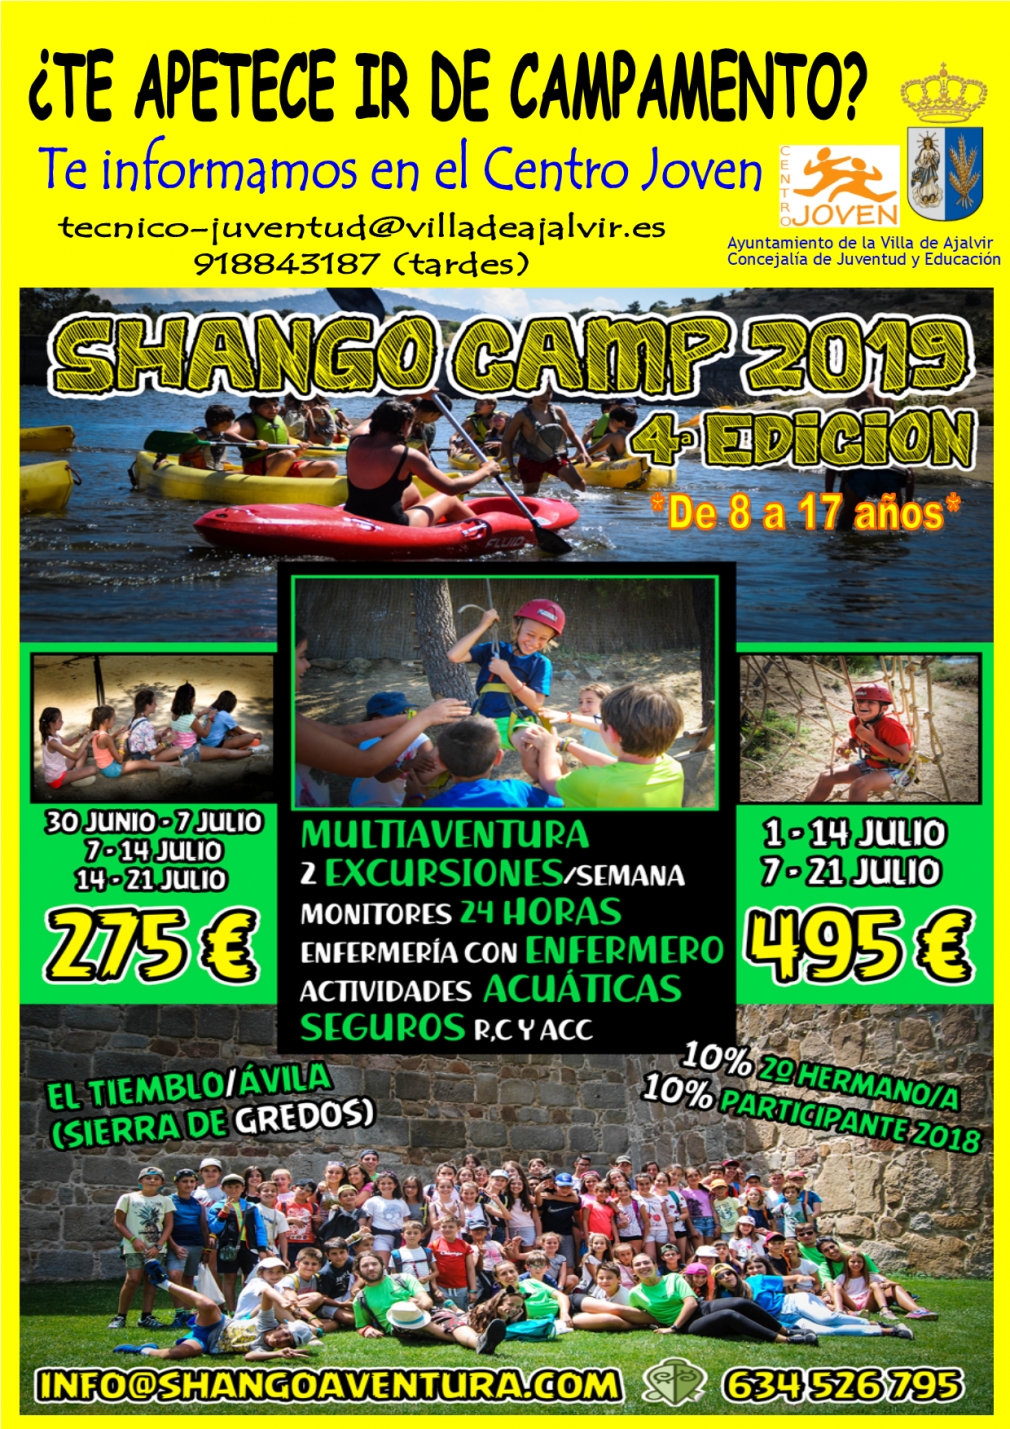 Campamento de Verano en Ávila para jóvenes de 8 a 17 años. Reunión informativa el Viernes 10 de Mayo